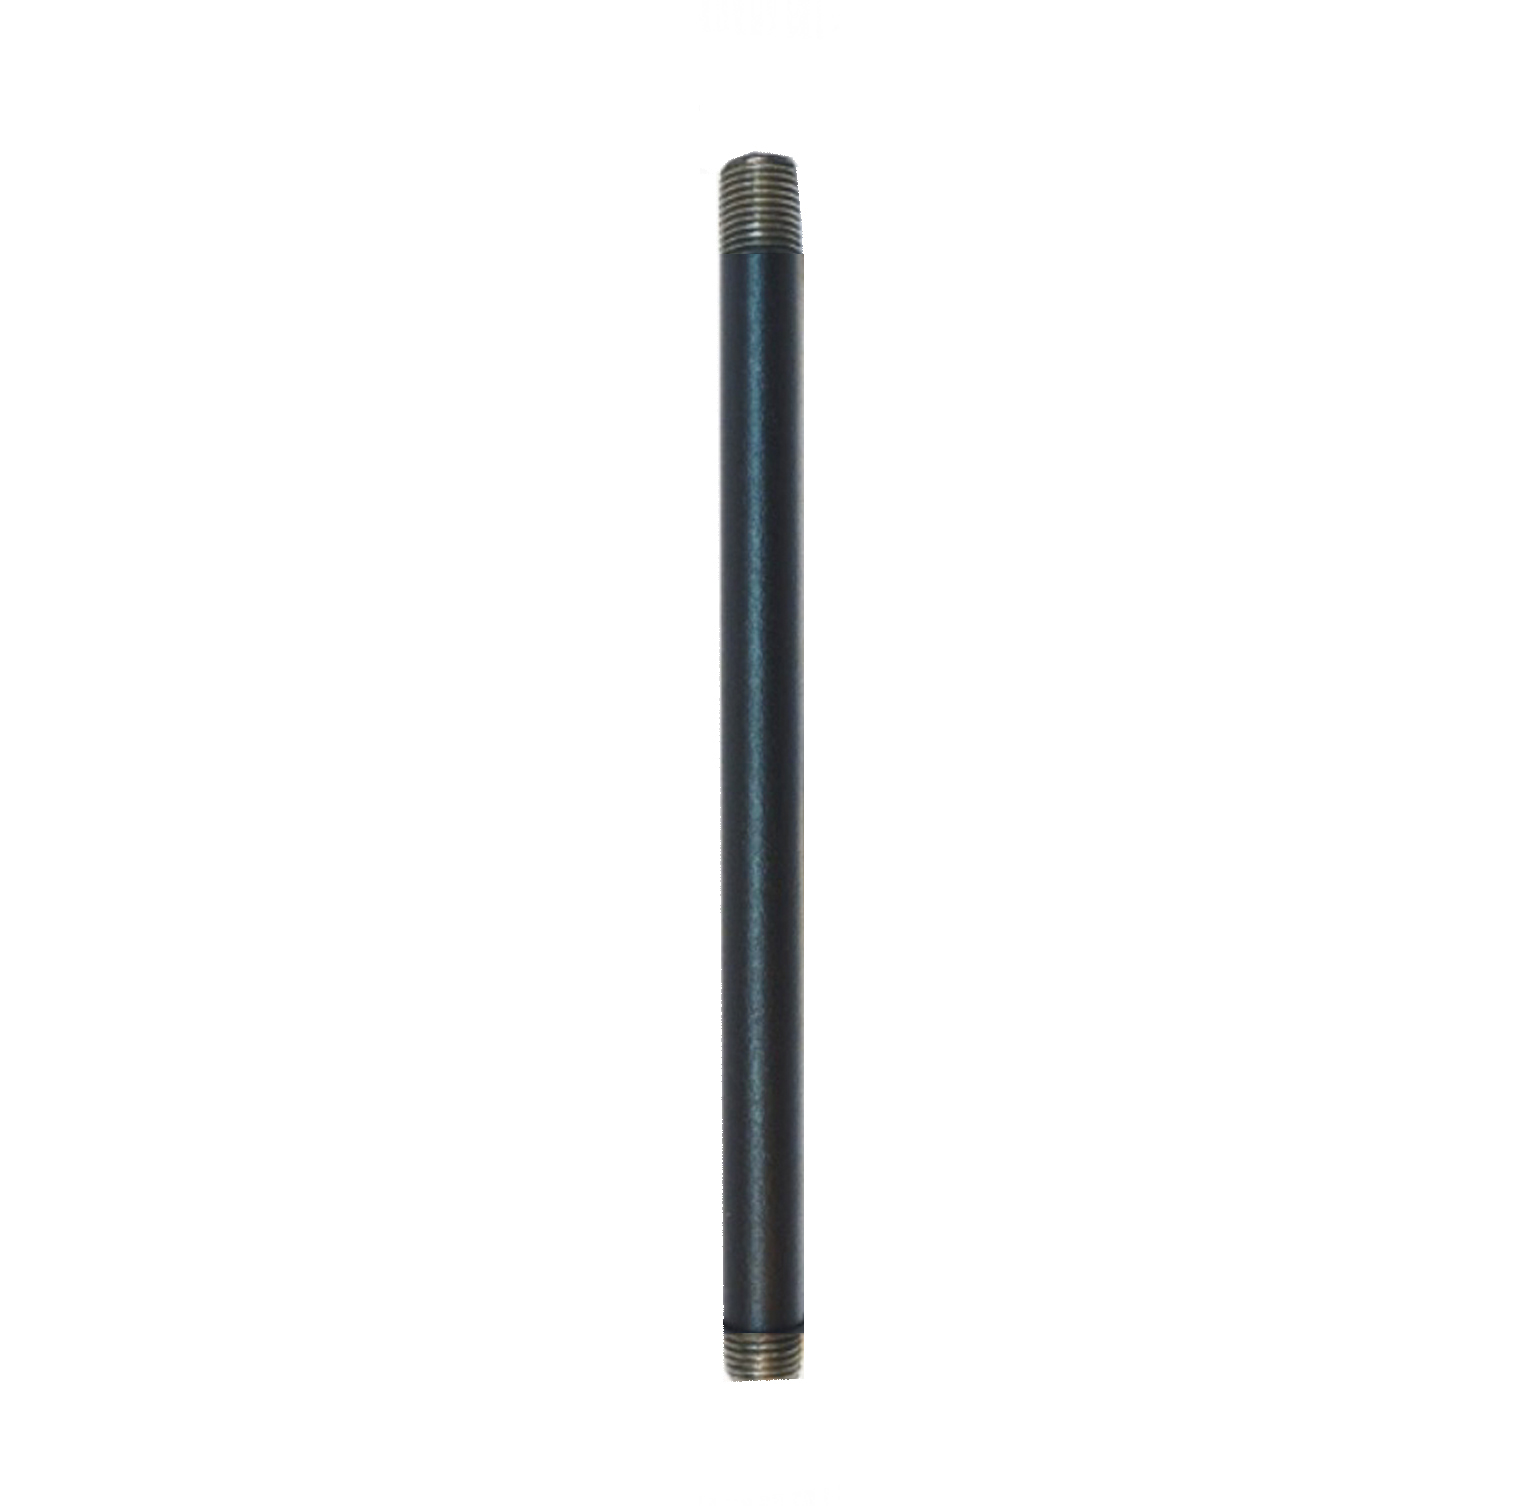 Tija de metal negro extremos roscados 10/100 100mm largo ref. 285038